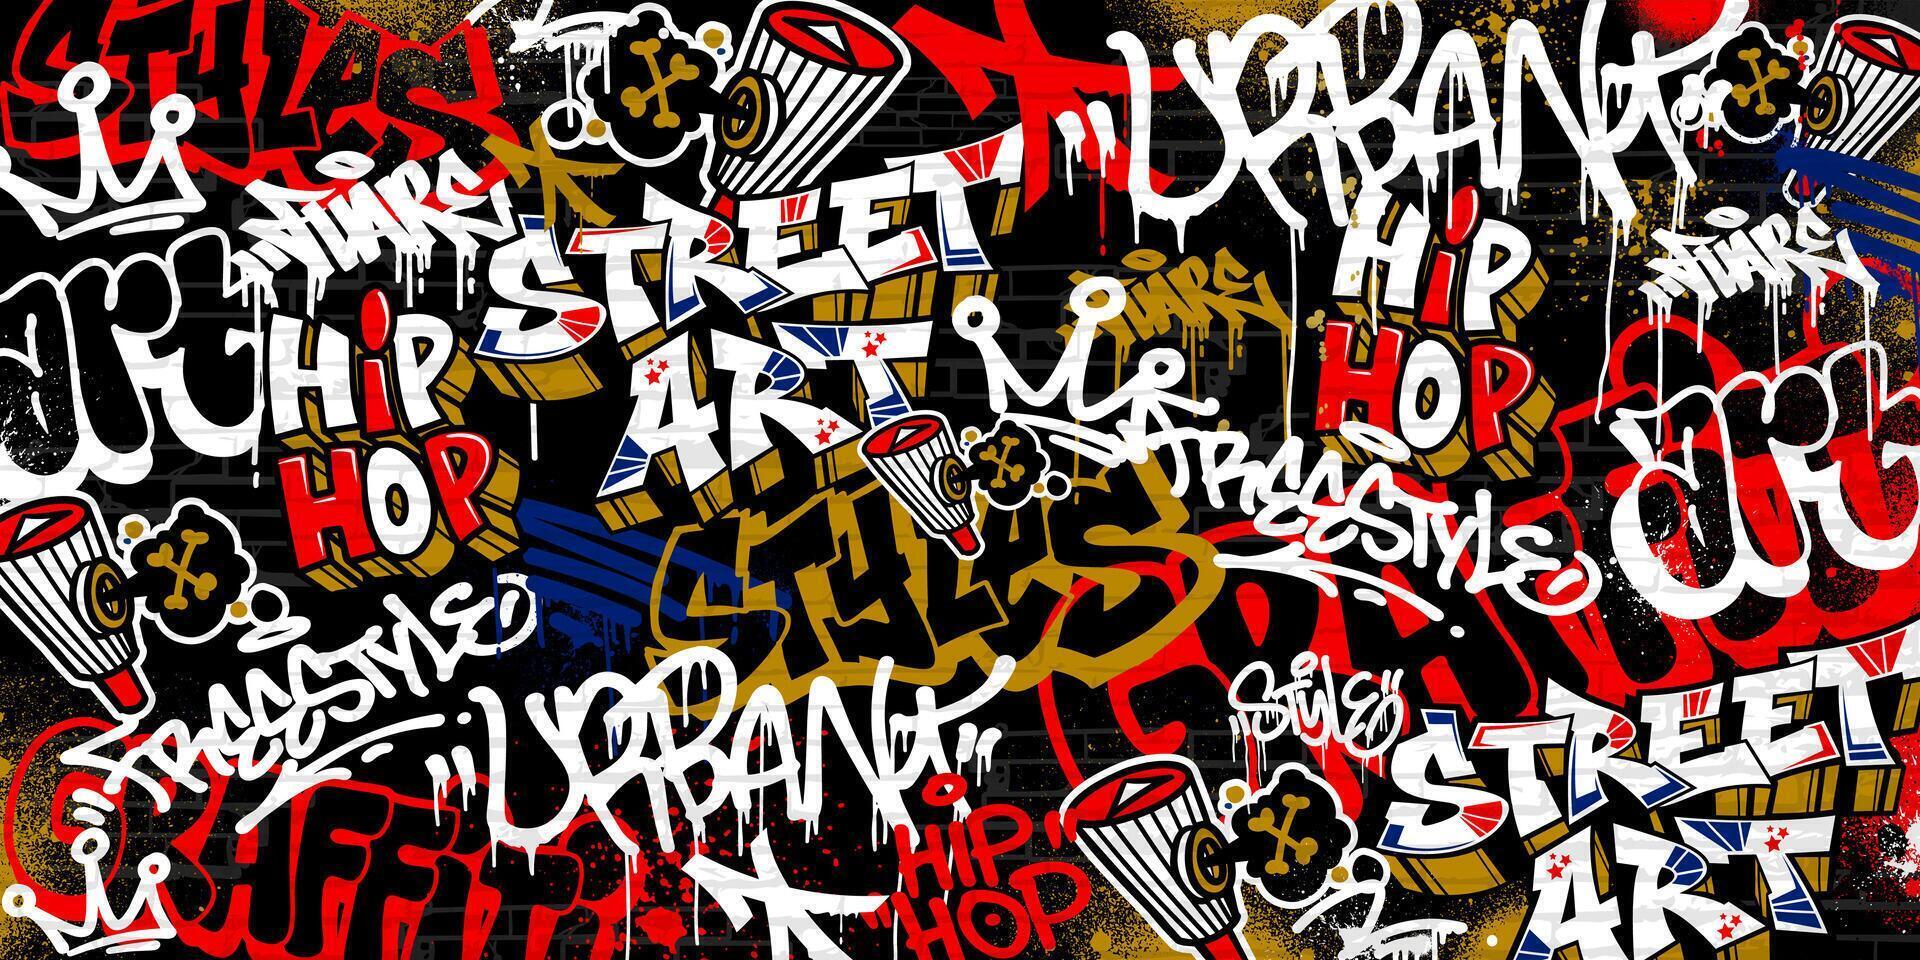 grafite fundo com jogar fora e marcação desenhado à mão estilo. rua arte grafite urbano tema dentro formatar. vetor